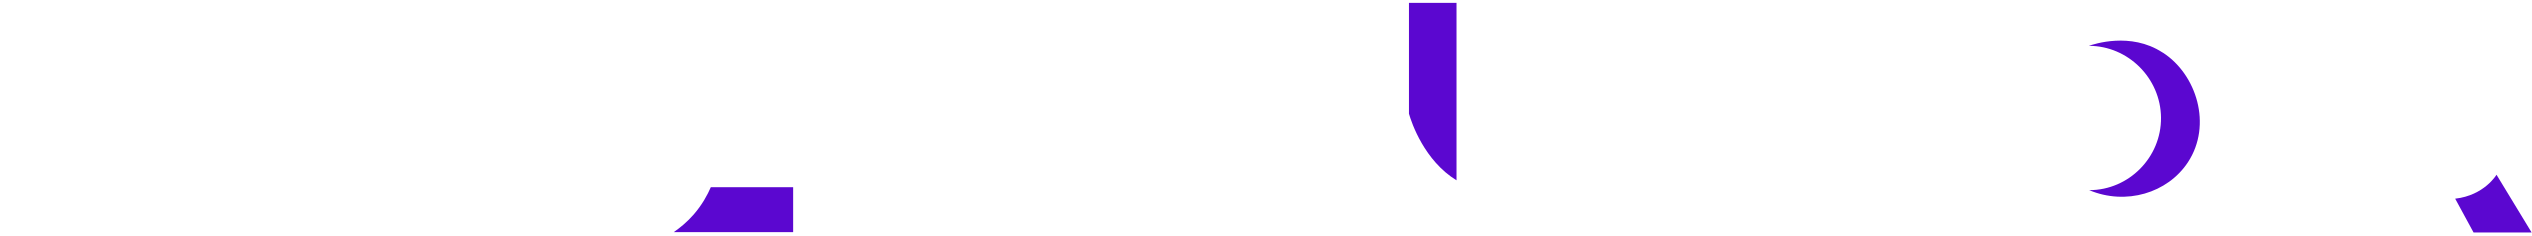 Talendor logo